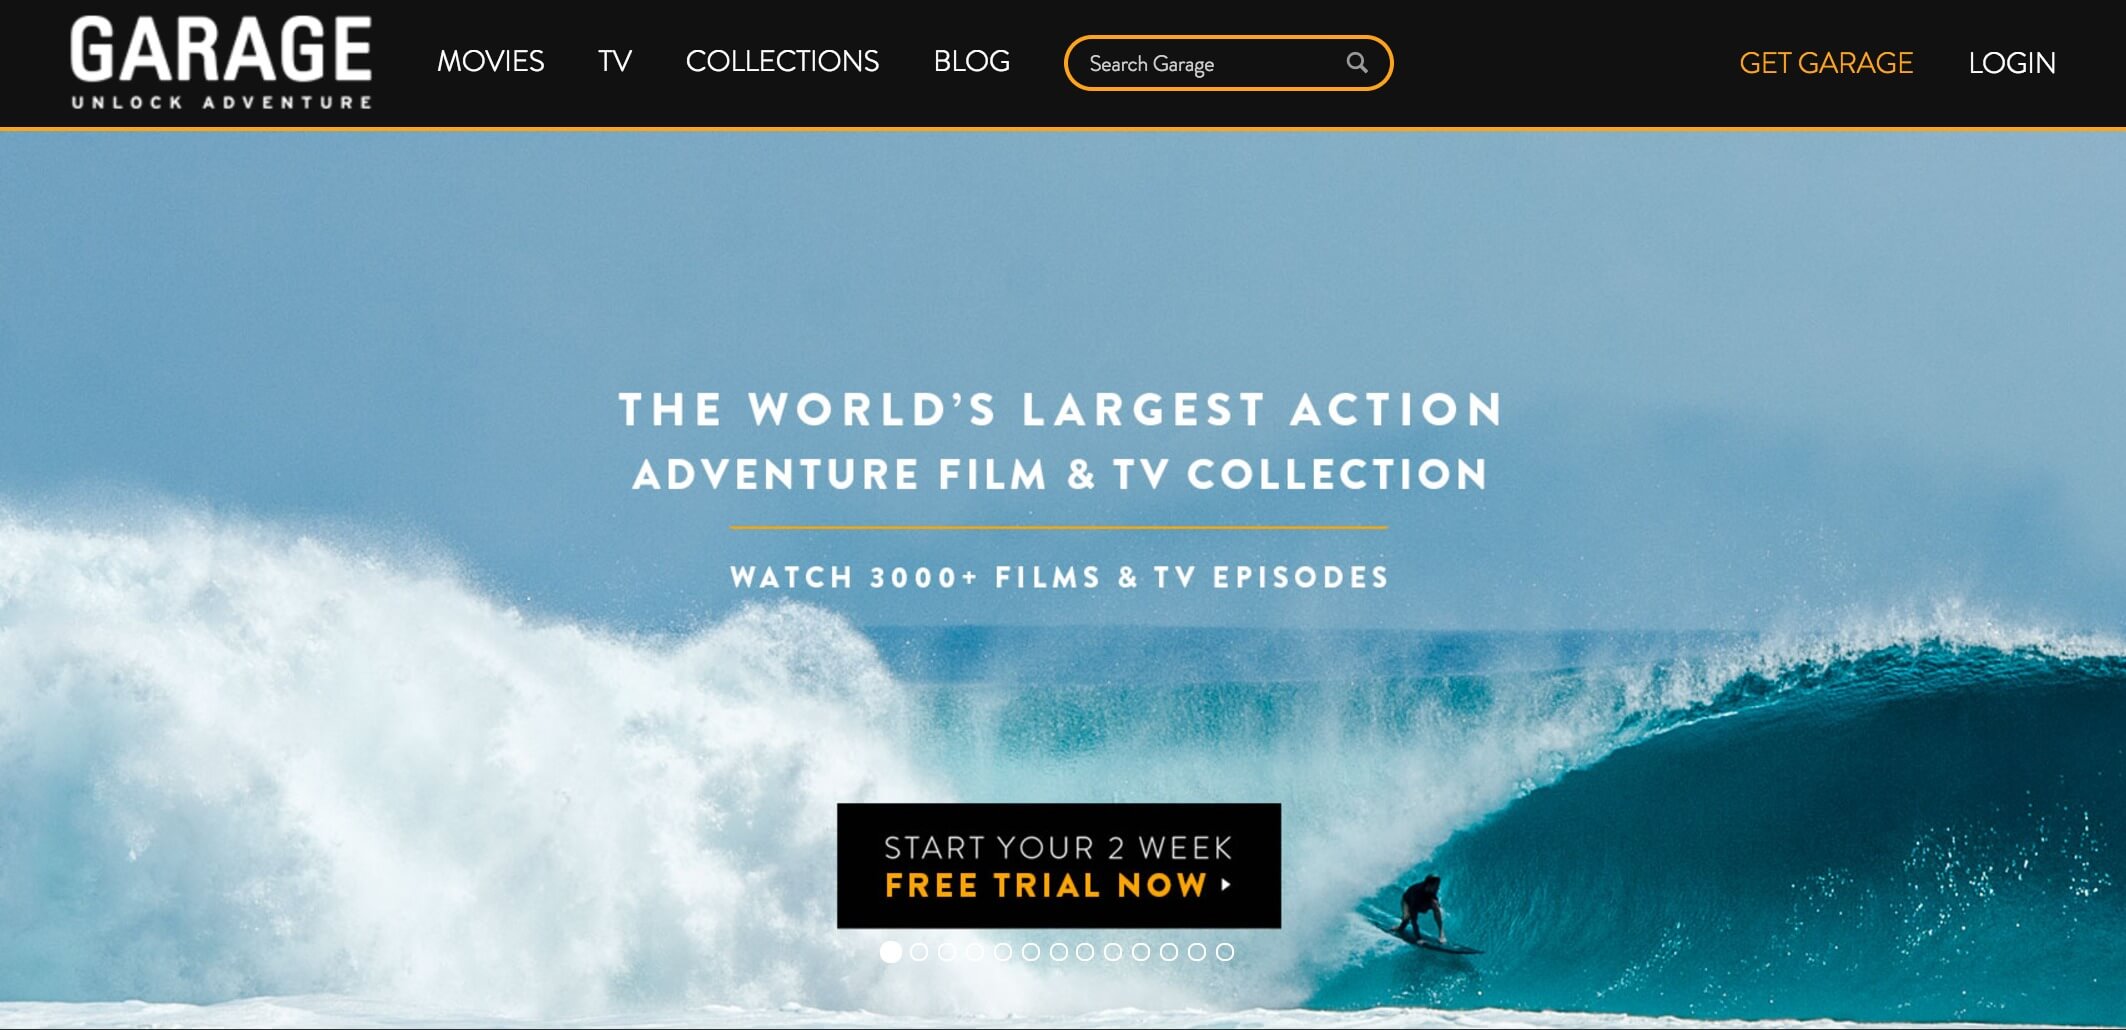 best-surfing-websites